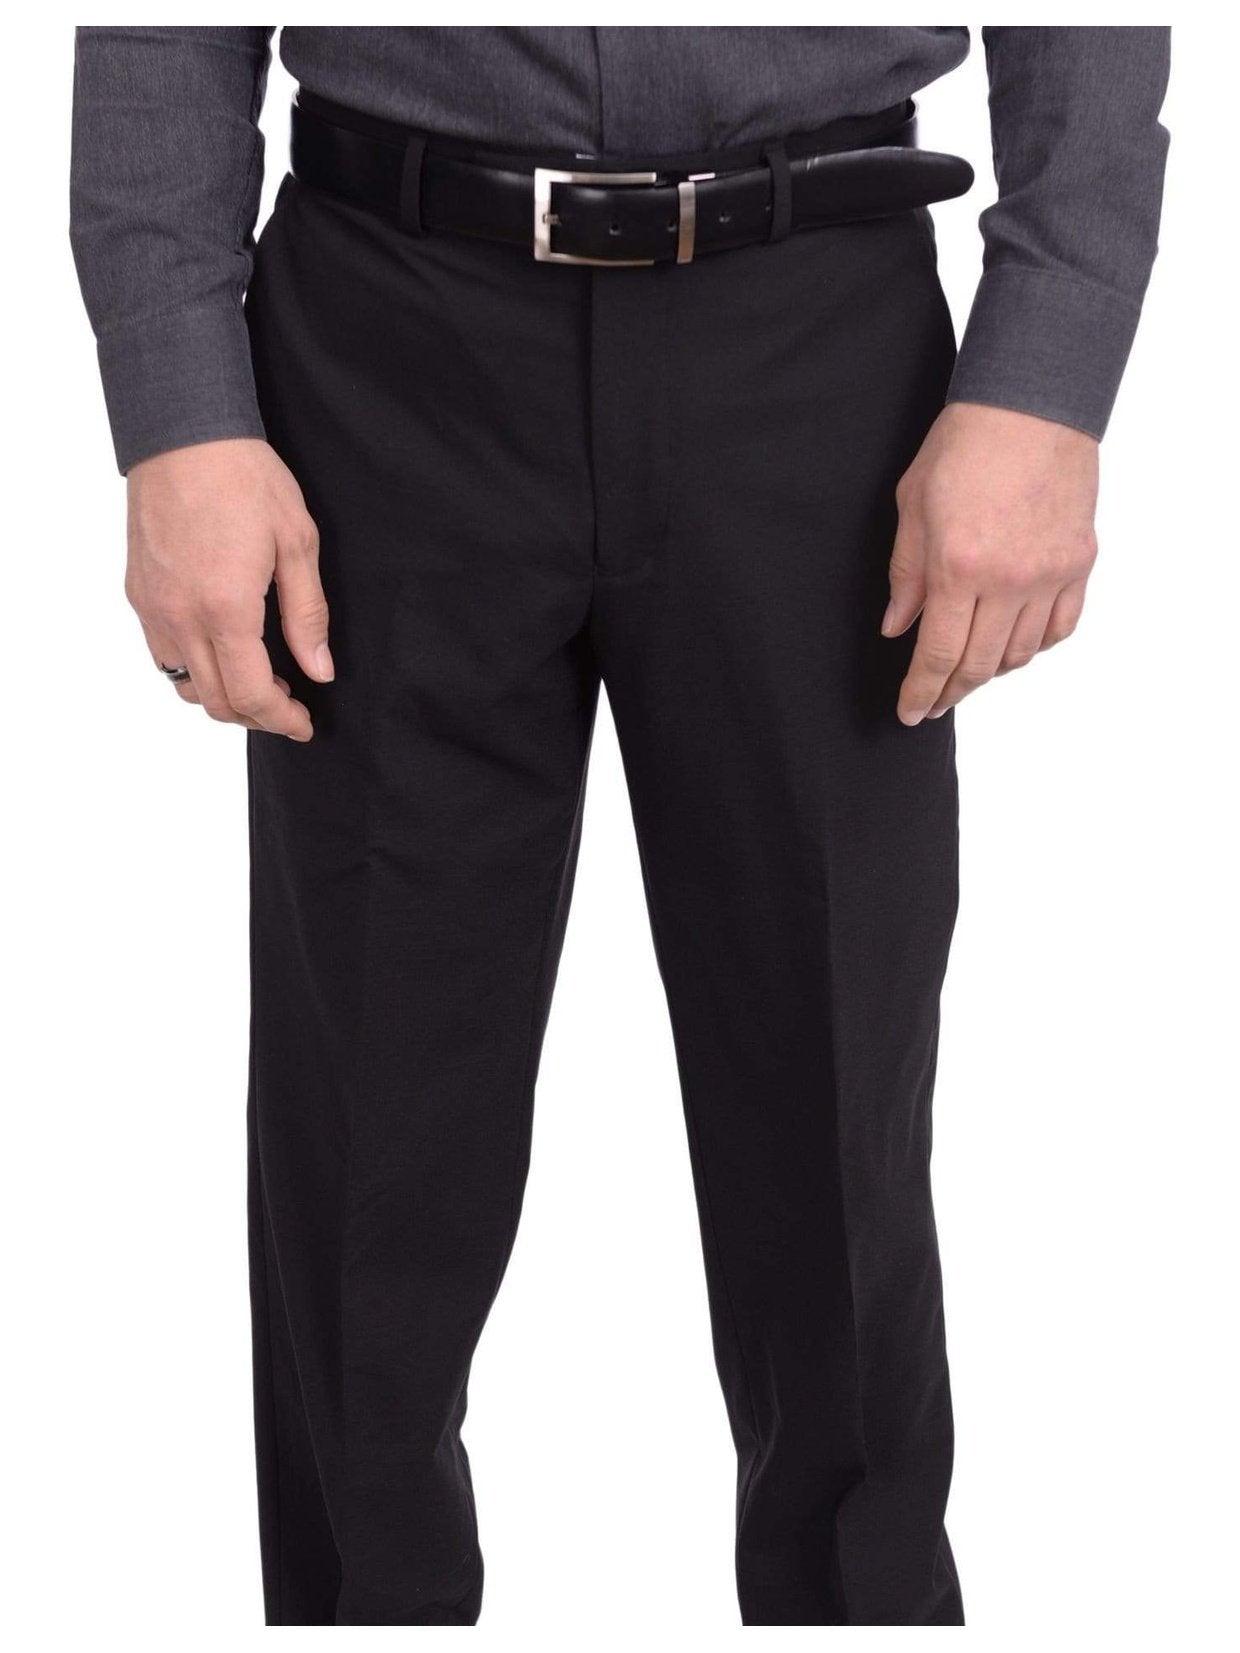 Wrangler Regular Fit Black Dress Pants,82Bk